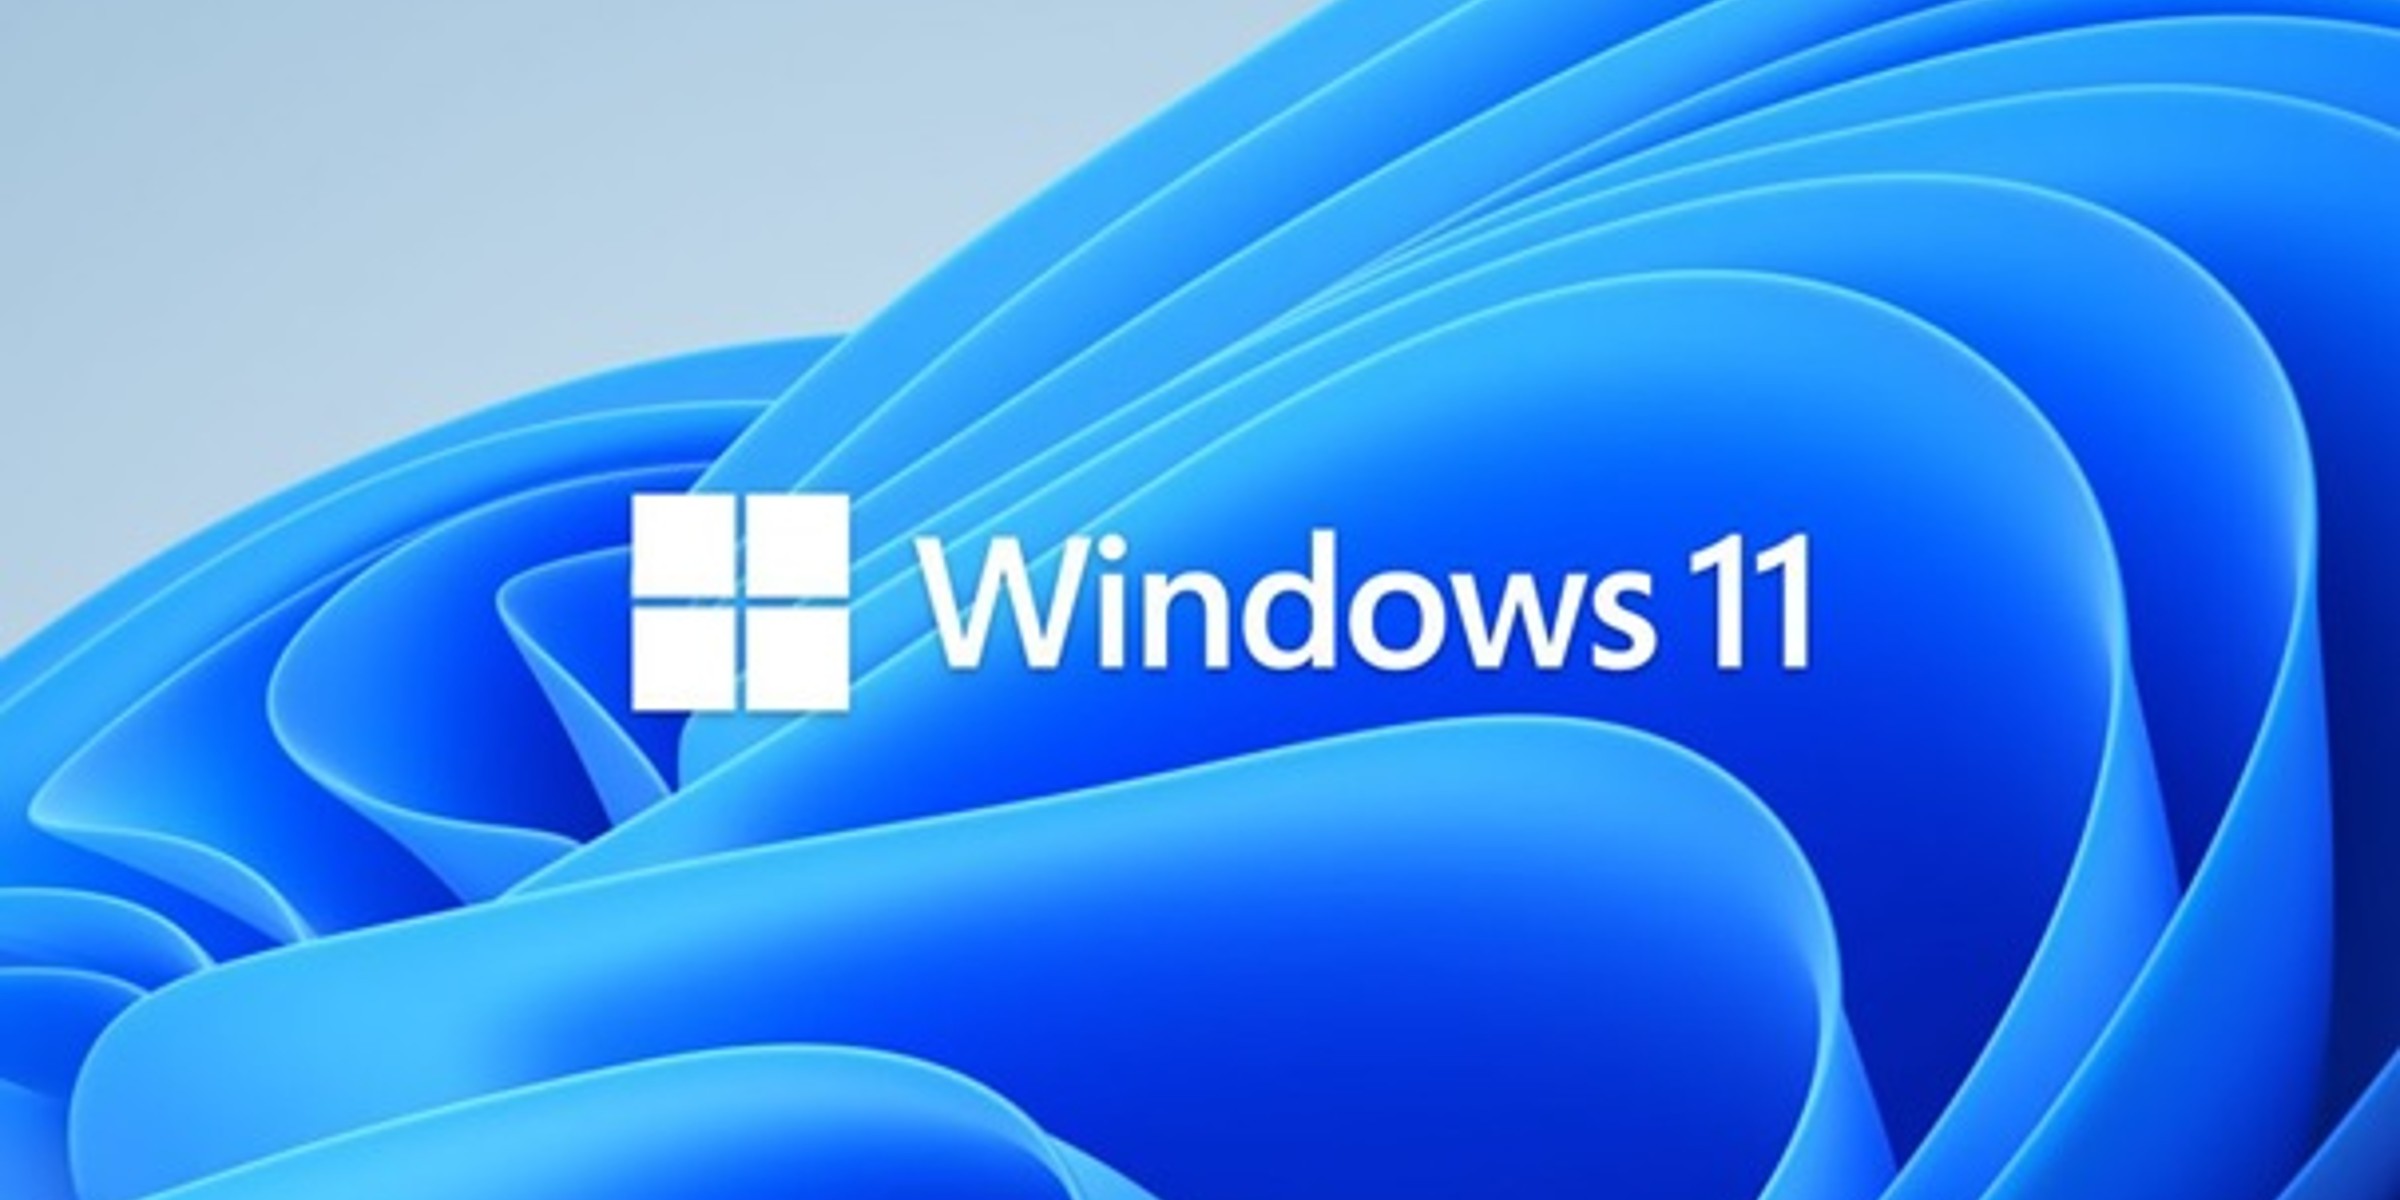 Bilde av illustrasjon av Windows 11.